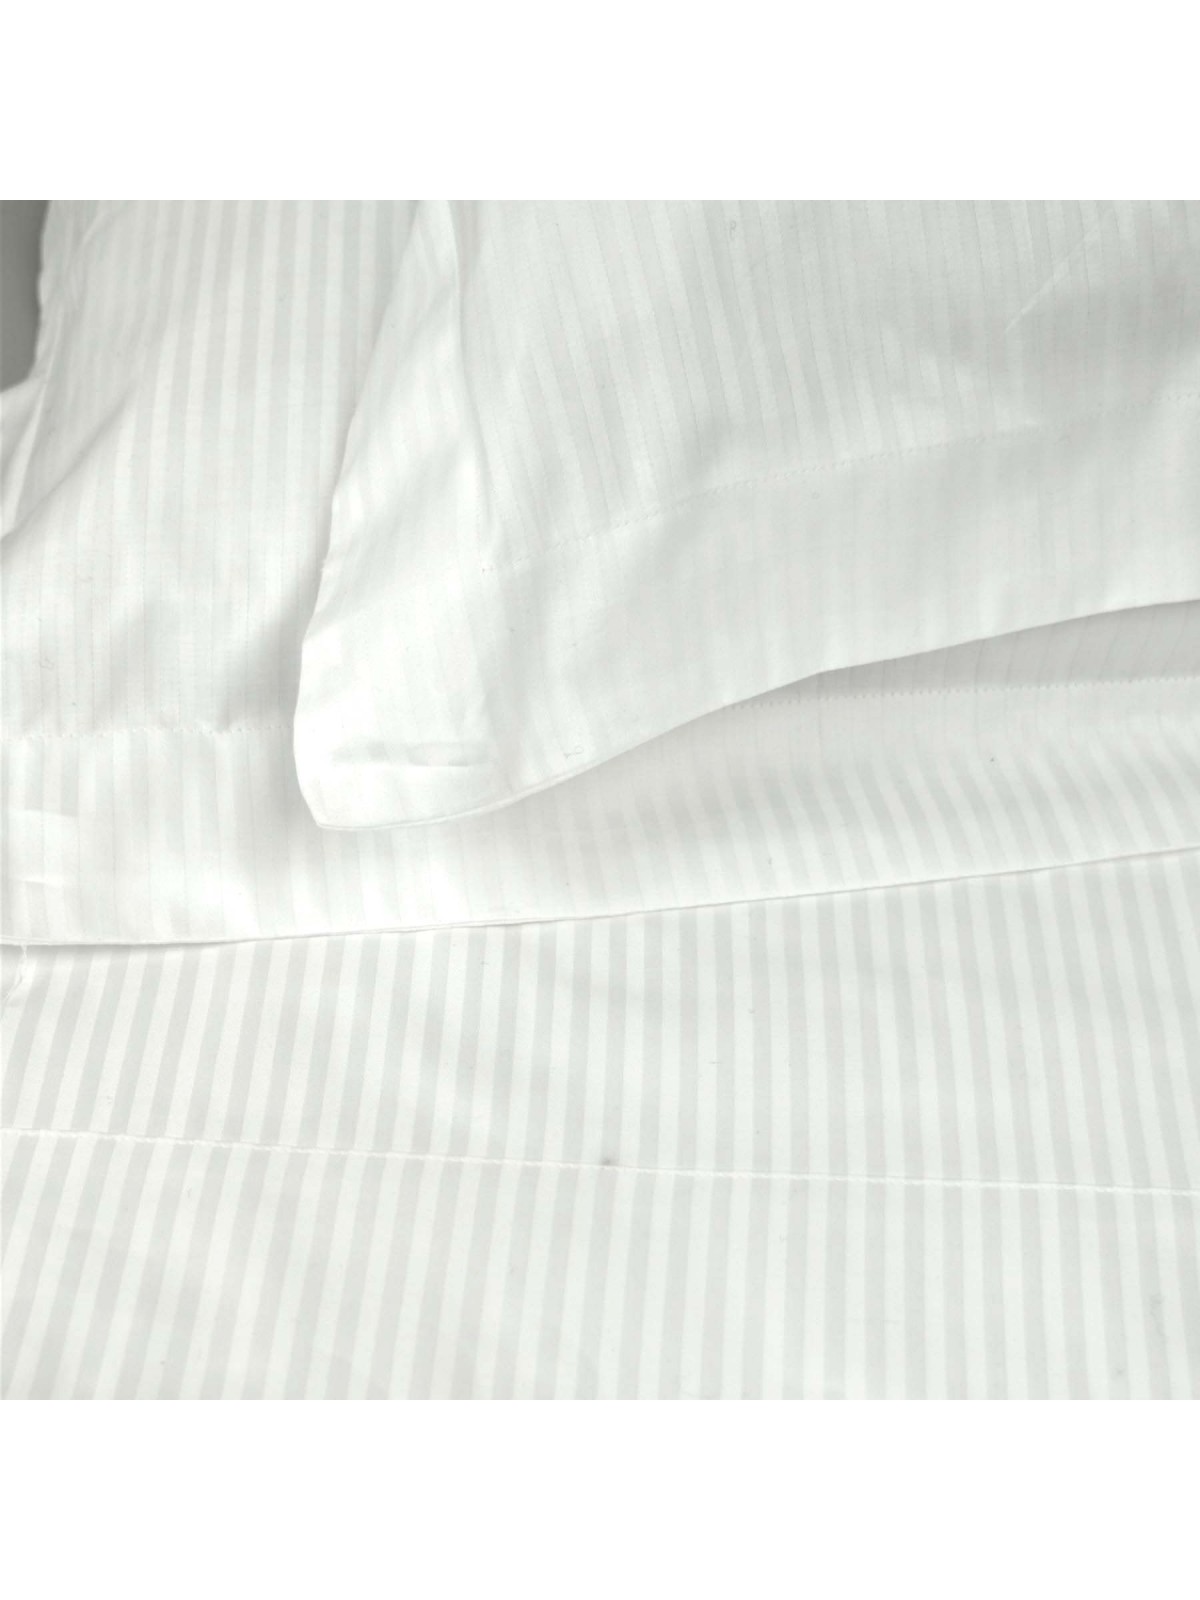 Baumwoll-Satin-Bettwäsche mit kleinen Streifen